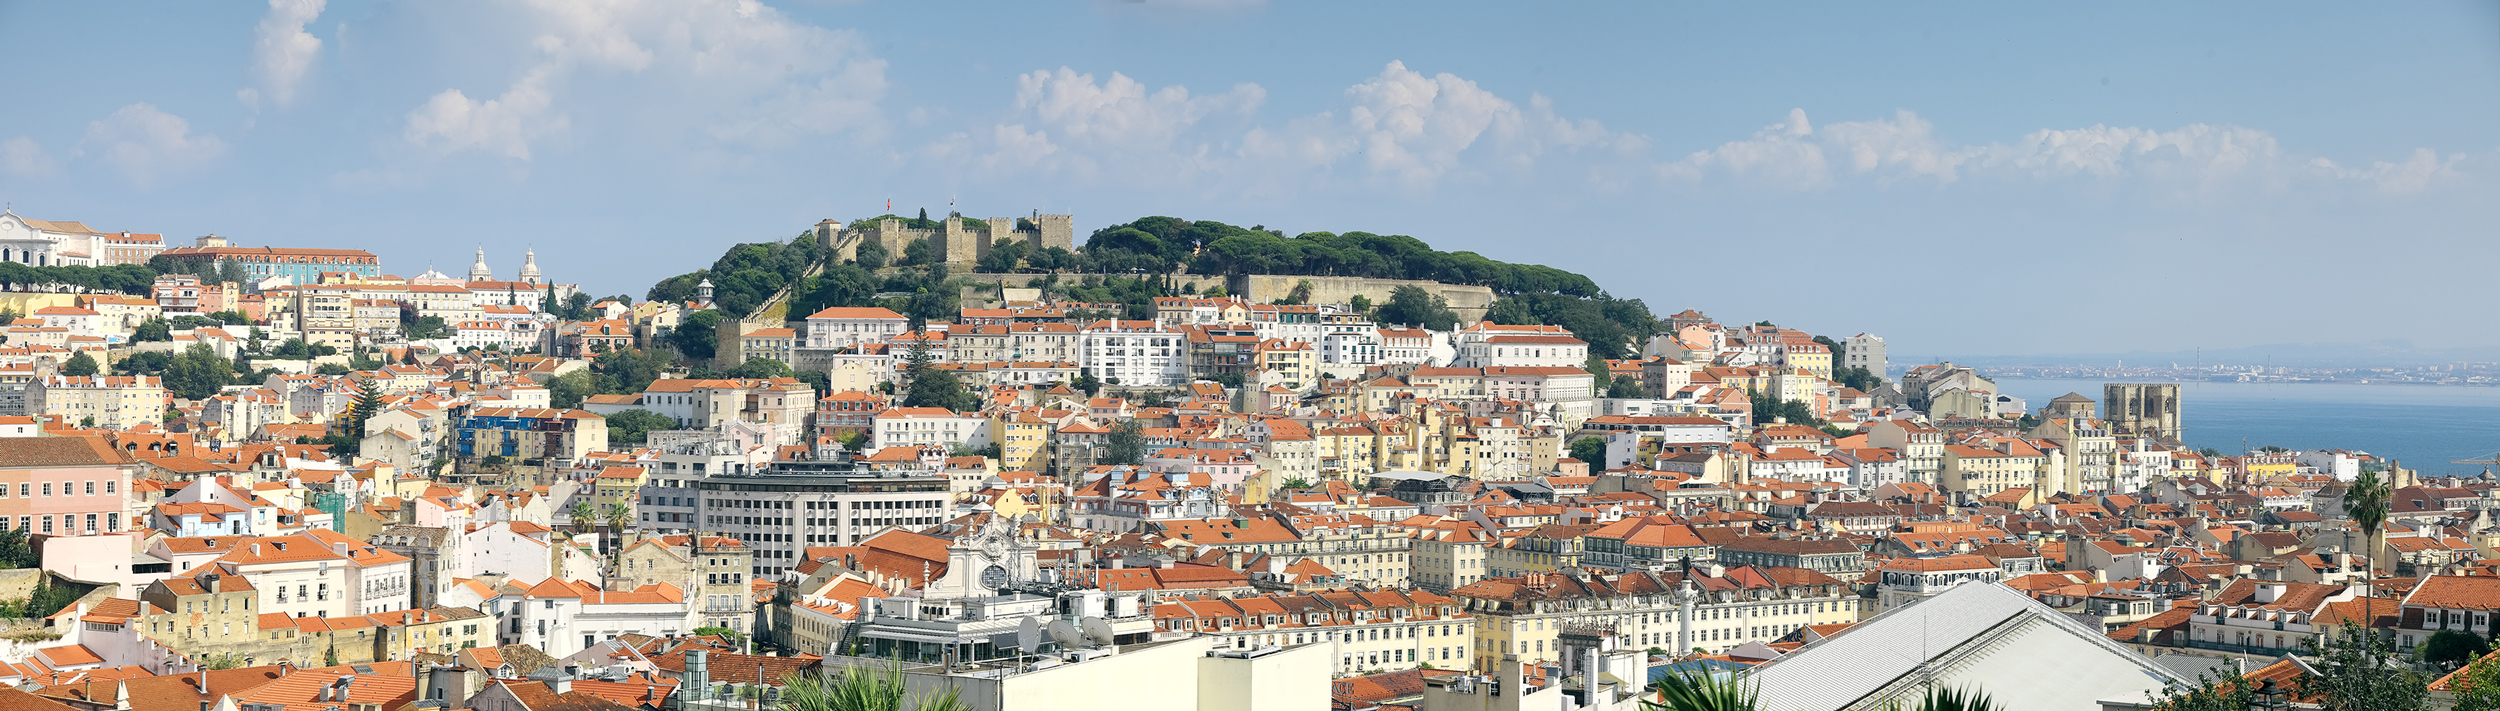 Lisboa - View to the castelo de São Jorge  | © Turismo de Lisboa |